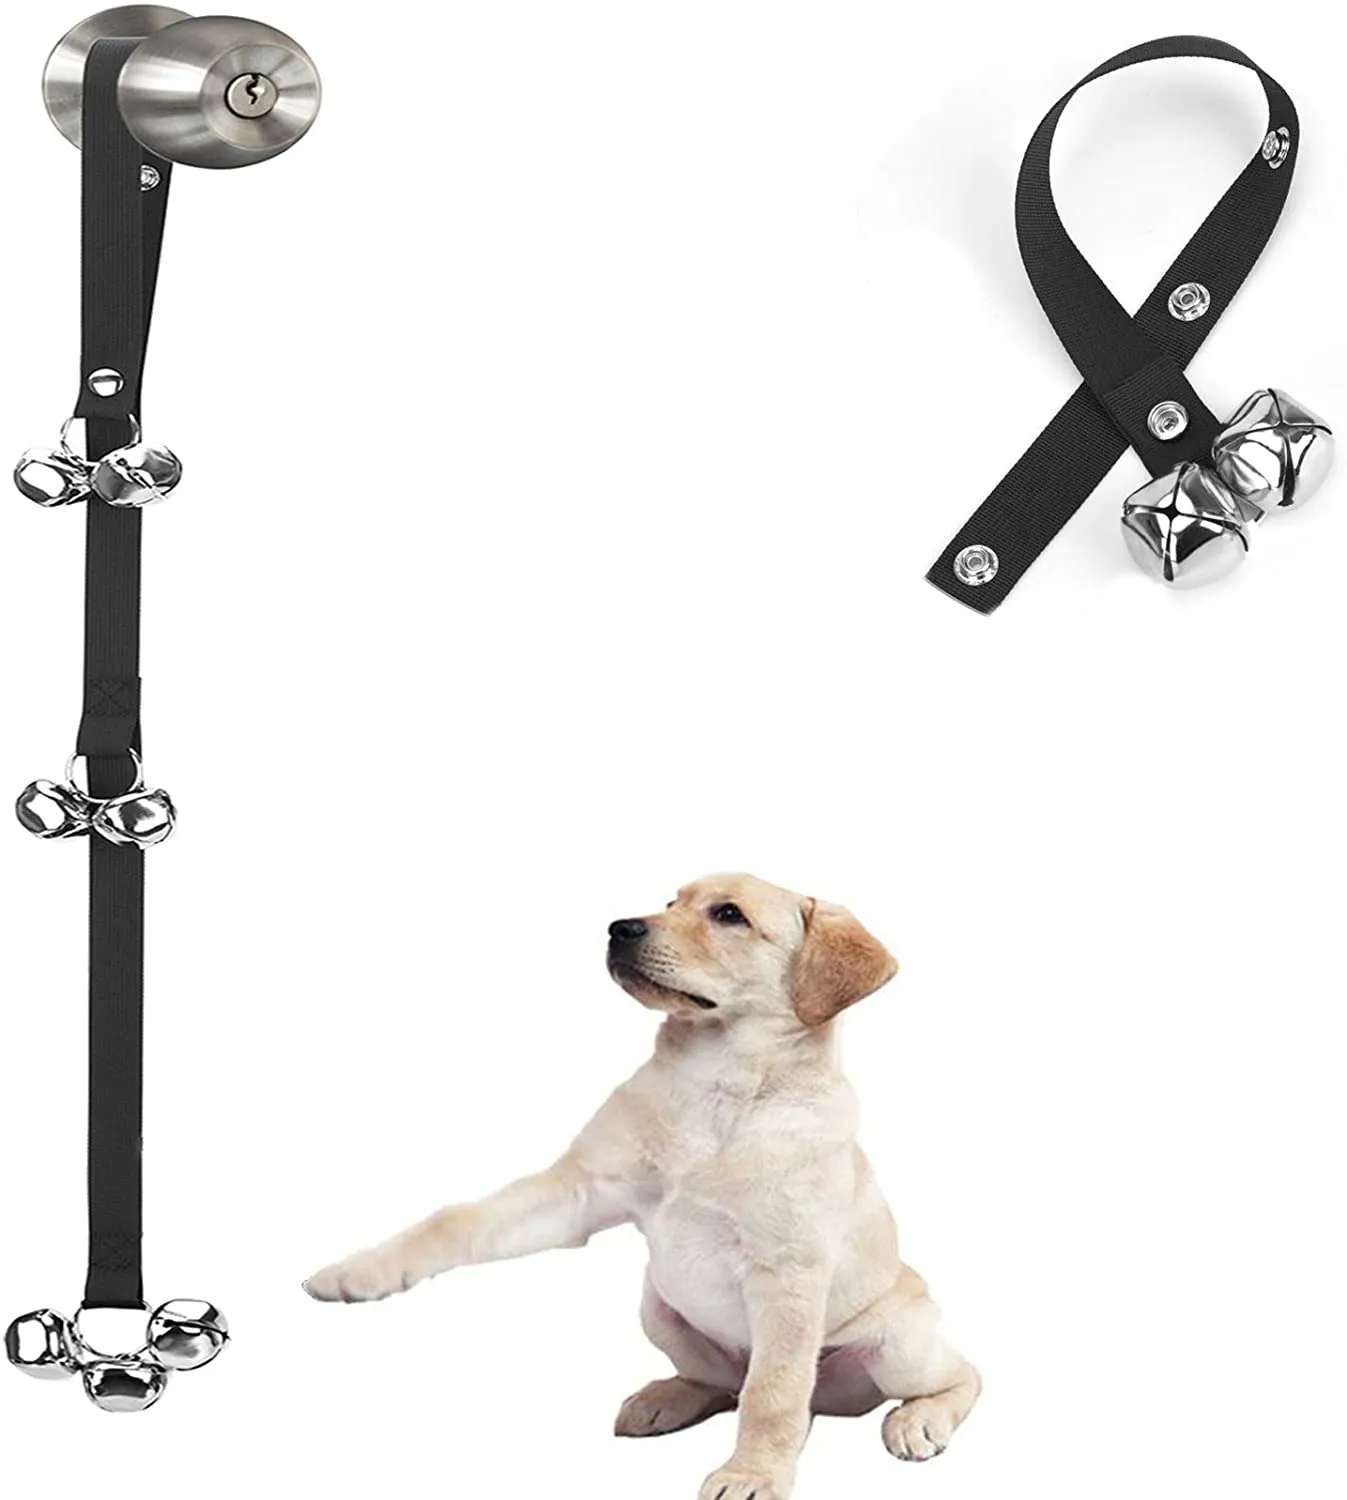 Dog Bolinhos Premium Potty Ajustável PET Bells para treinar seu filhote facilmente - alta qualidade - 7 extra grande alto